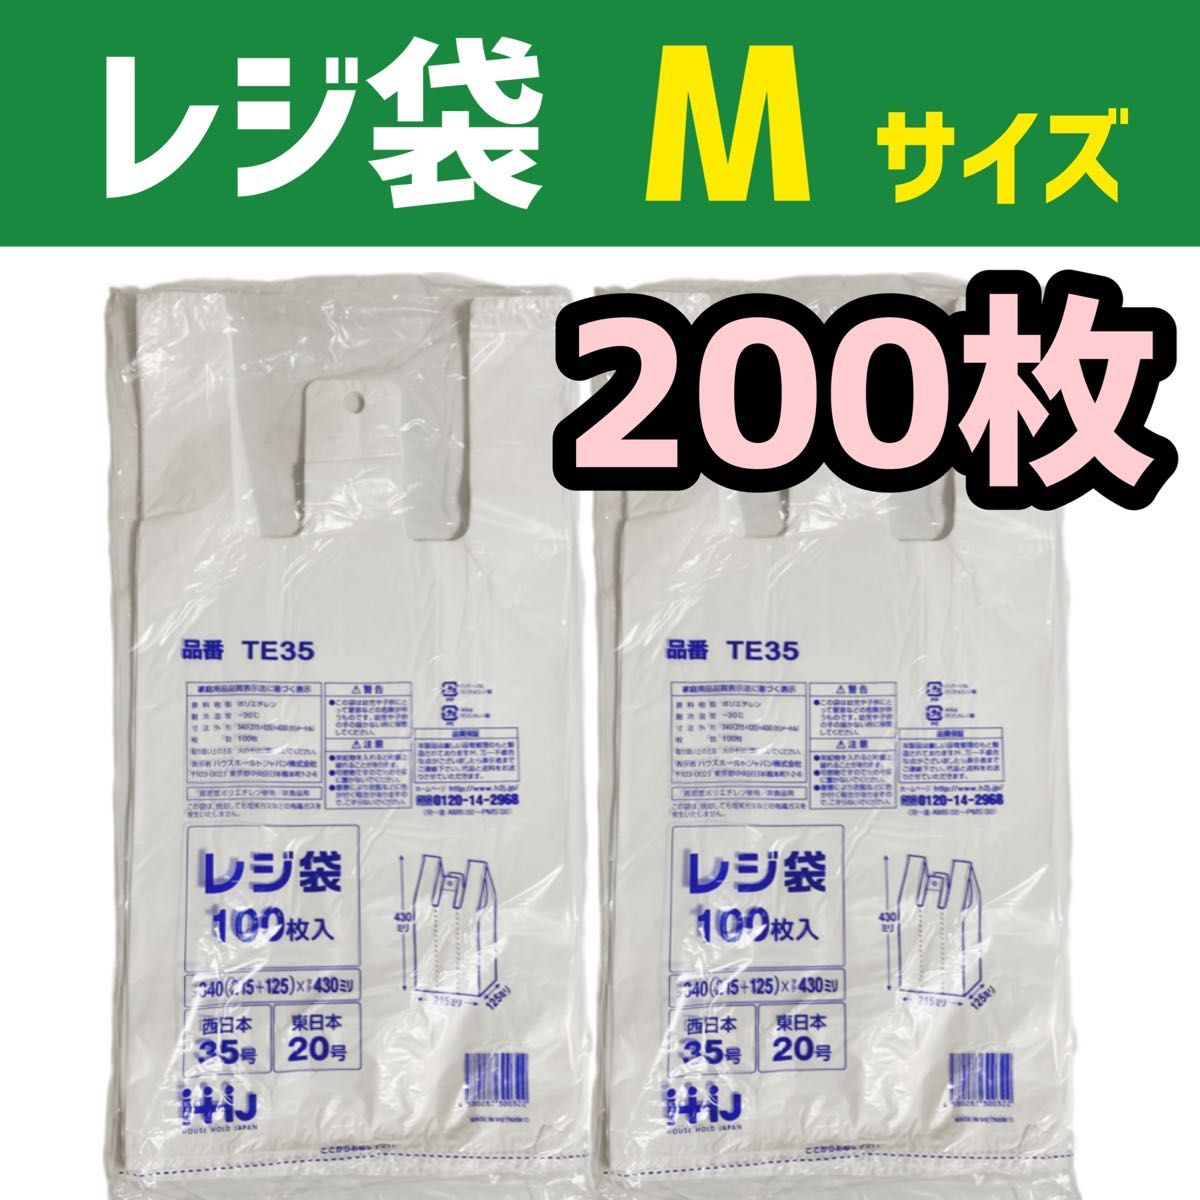 レジ袋 M 200枚 乳白色 無地 エコバッグ 手提げ袋 買い物袋 スーパーの袋 ビニール袋 ポリ袋 ゴミ袋 TE35